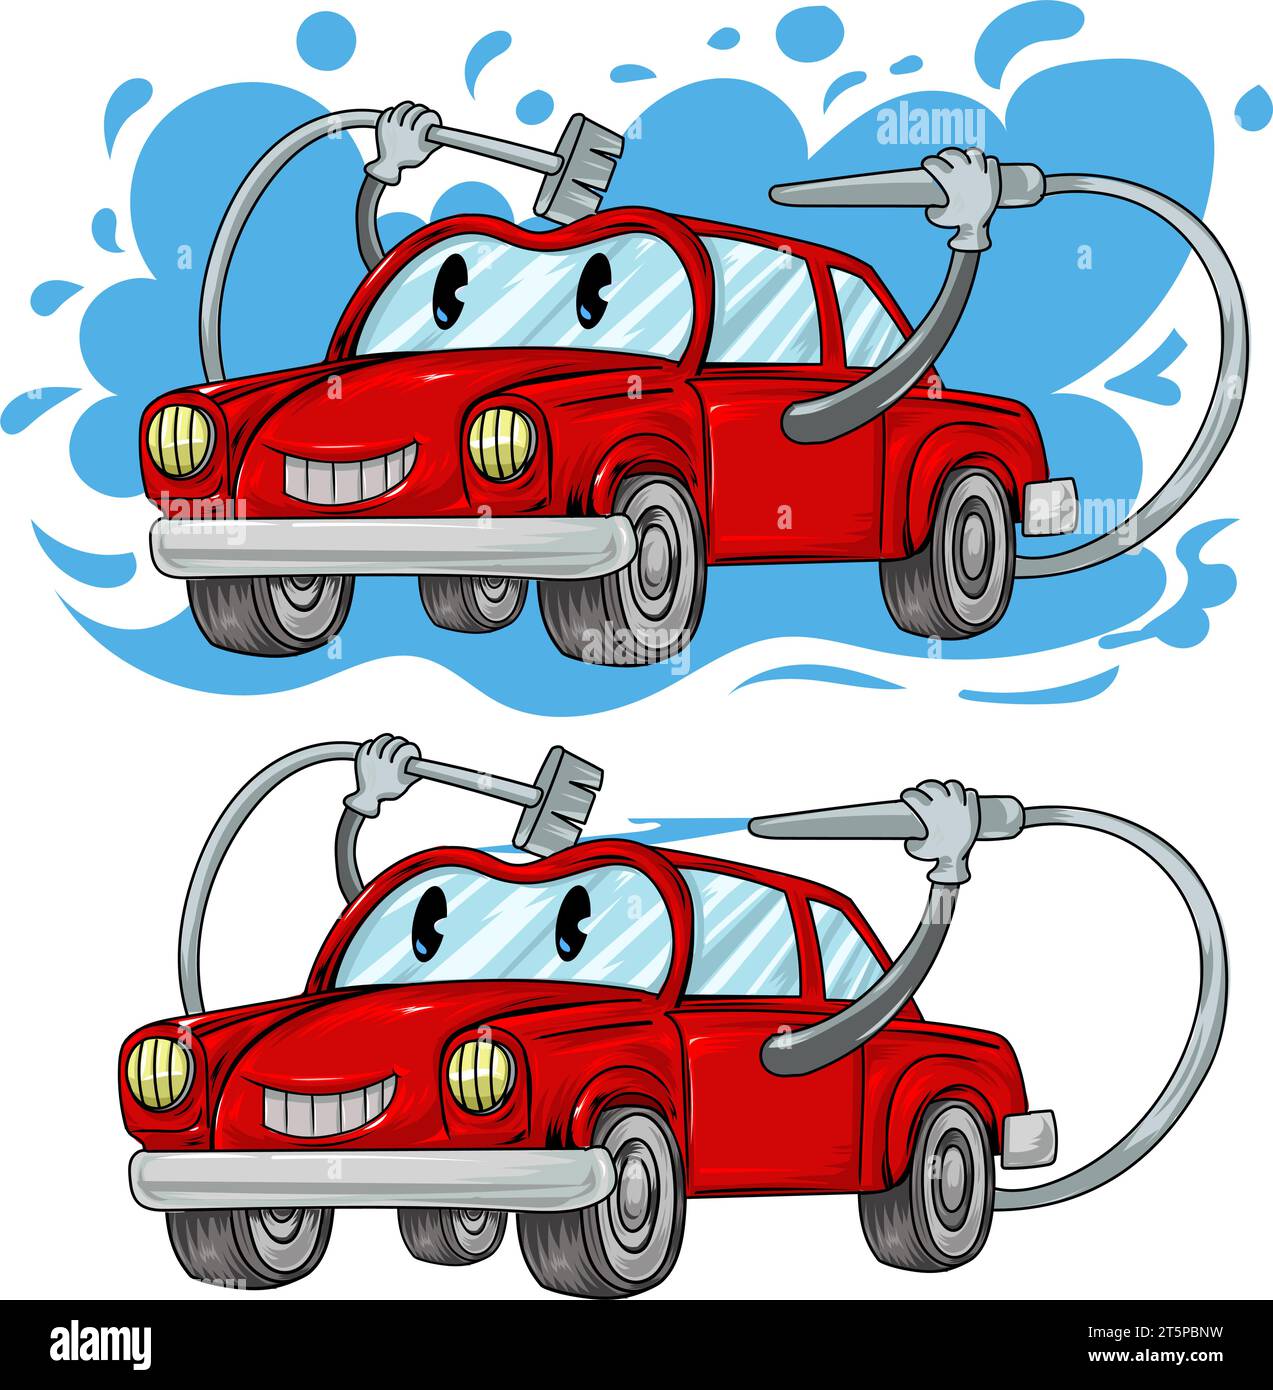 Auto Cartoon Charakter Auto Waschanlage. Vektor-handgezeichnete Illustration isoliert auf weißem Hintergrund. Stock Vektor